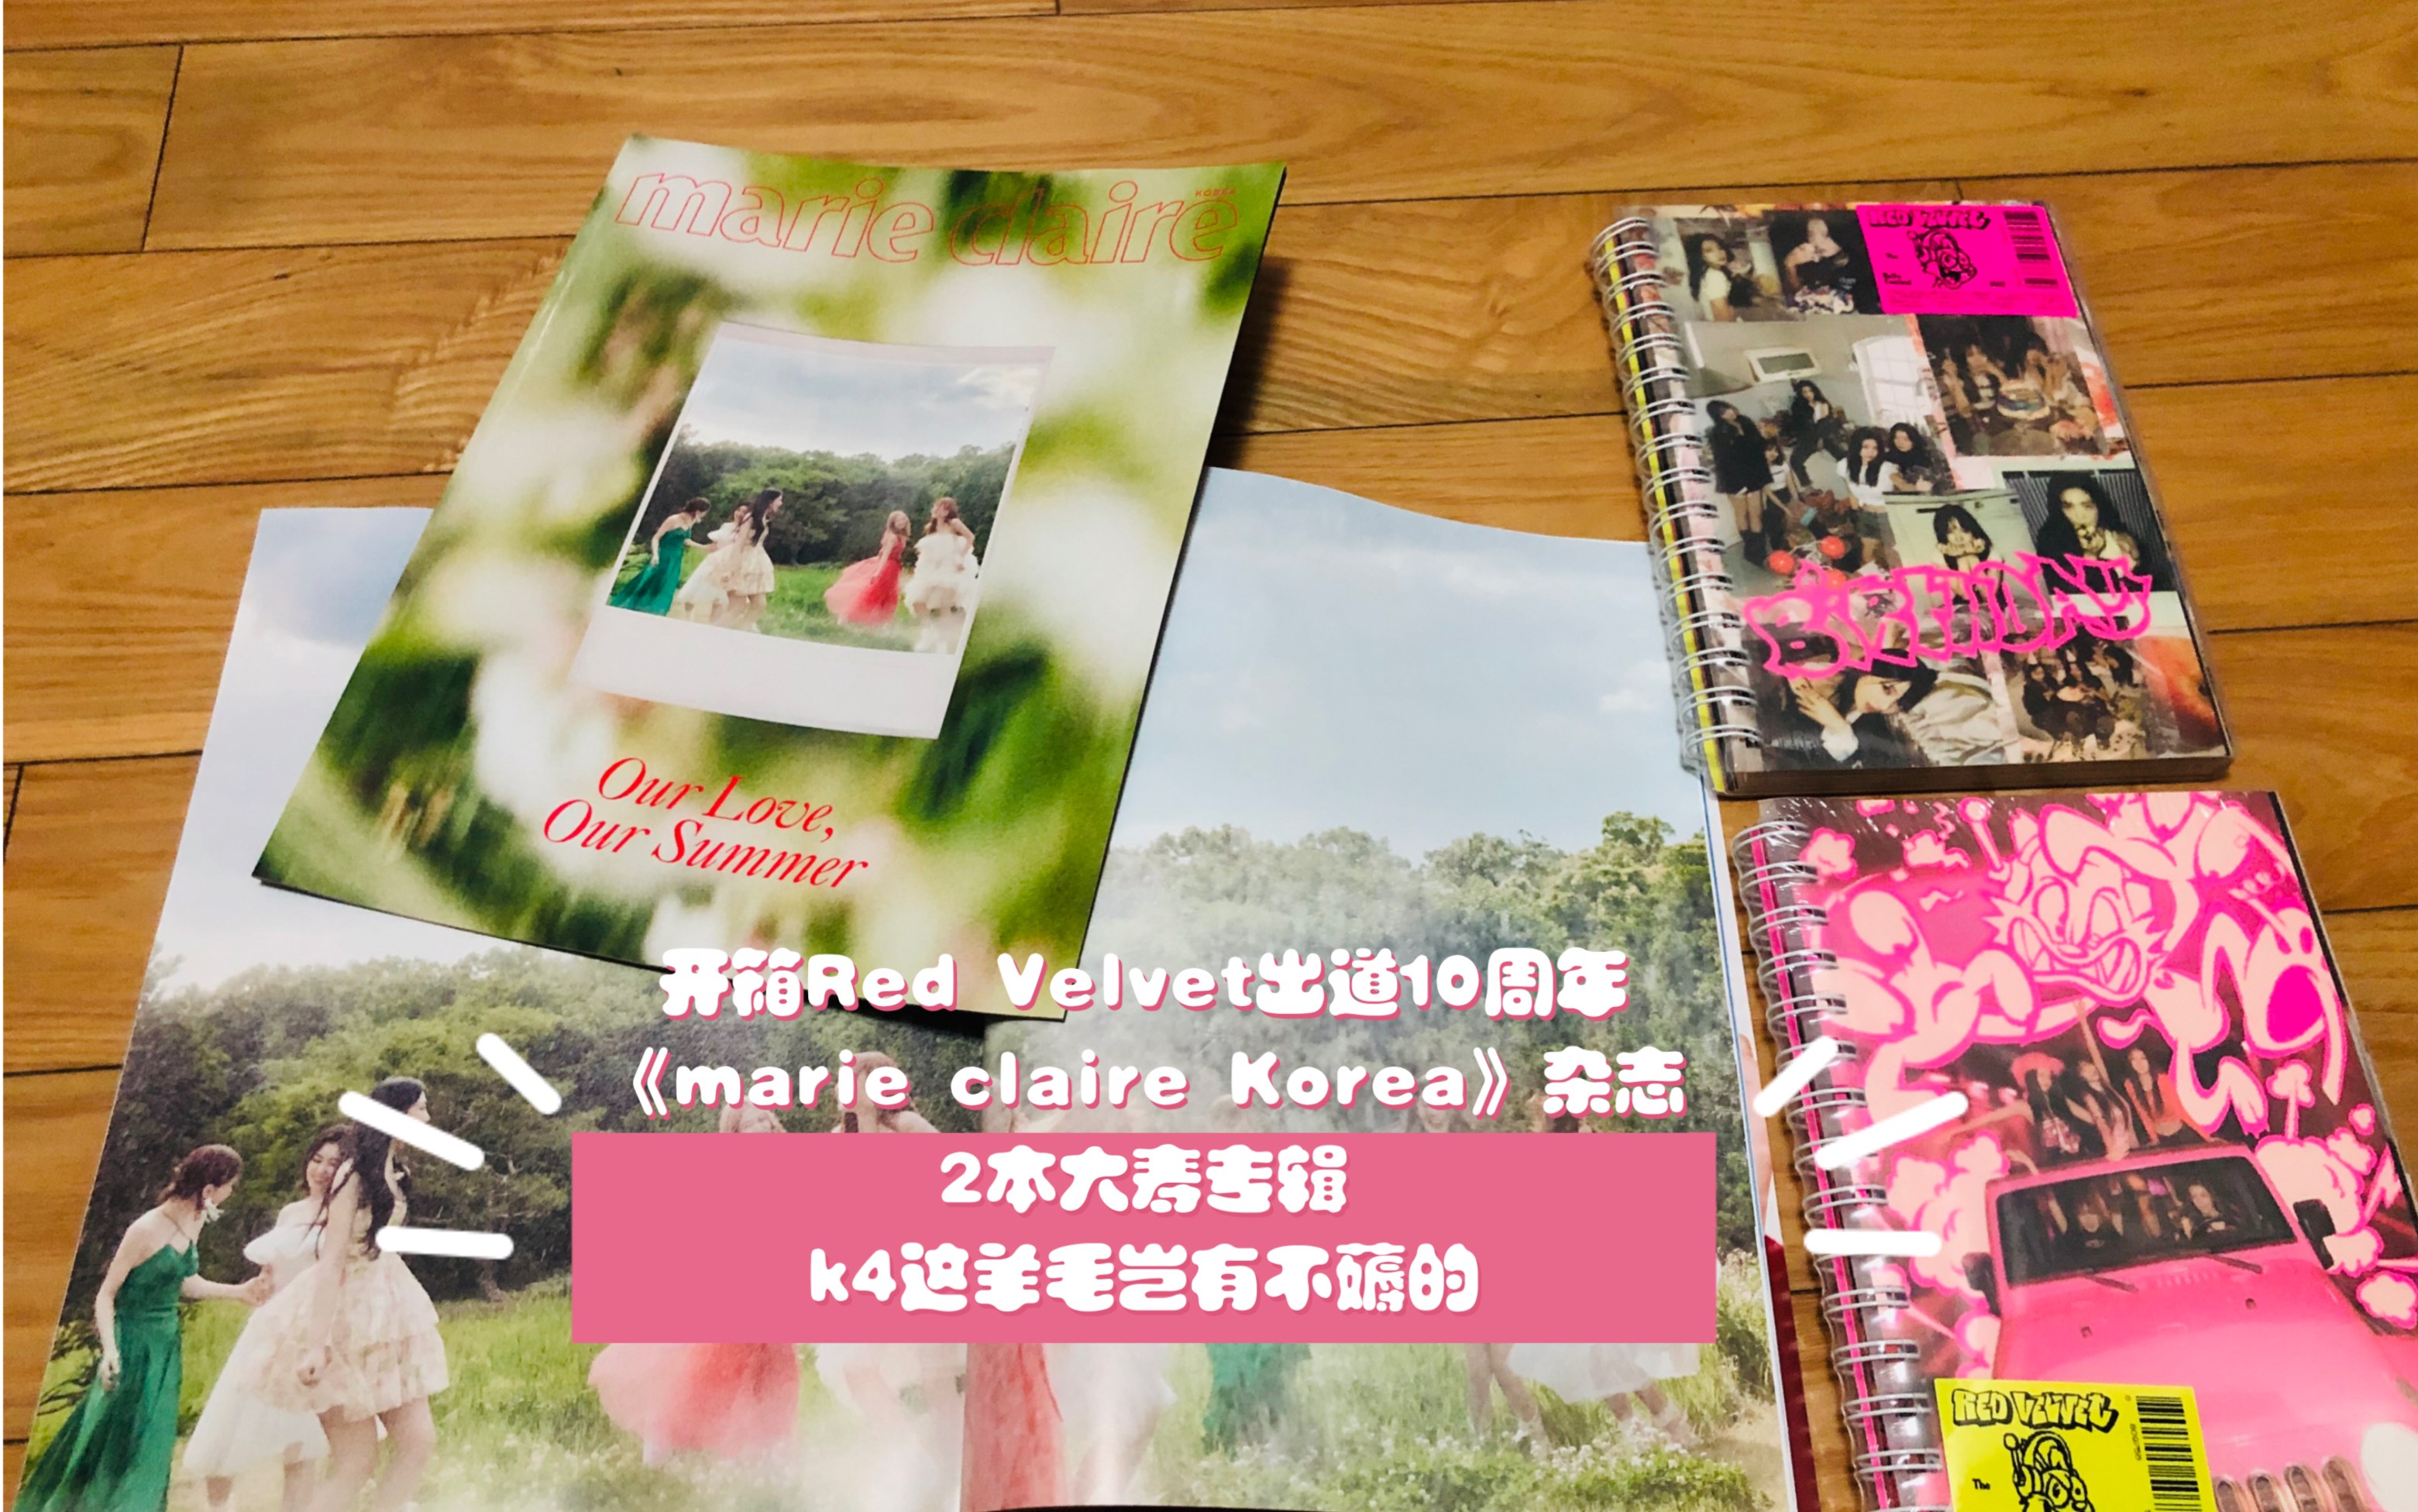 开箱Red Velvet纪念出道10周年杂志《marie claire Korea》和2本大寿专辑 k4这羊毛岂有不薅的